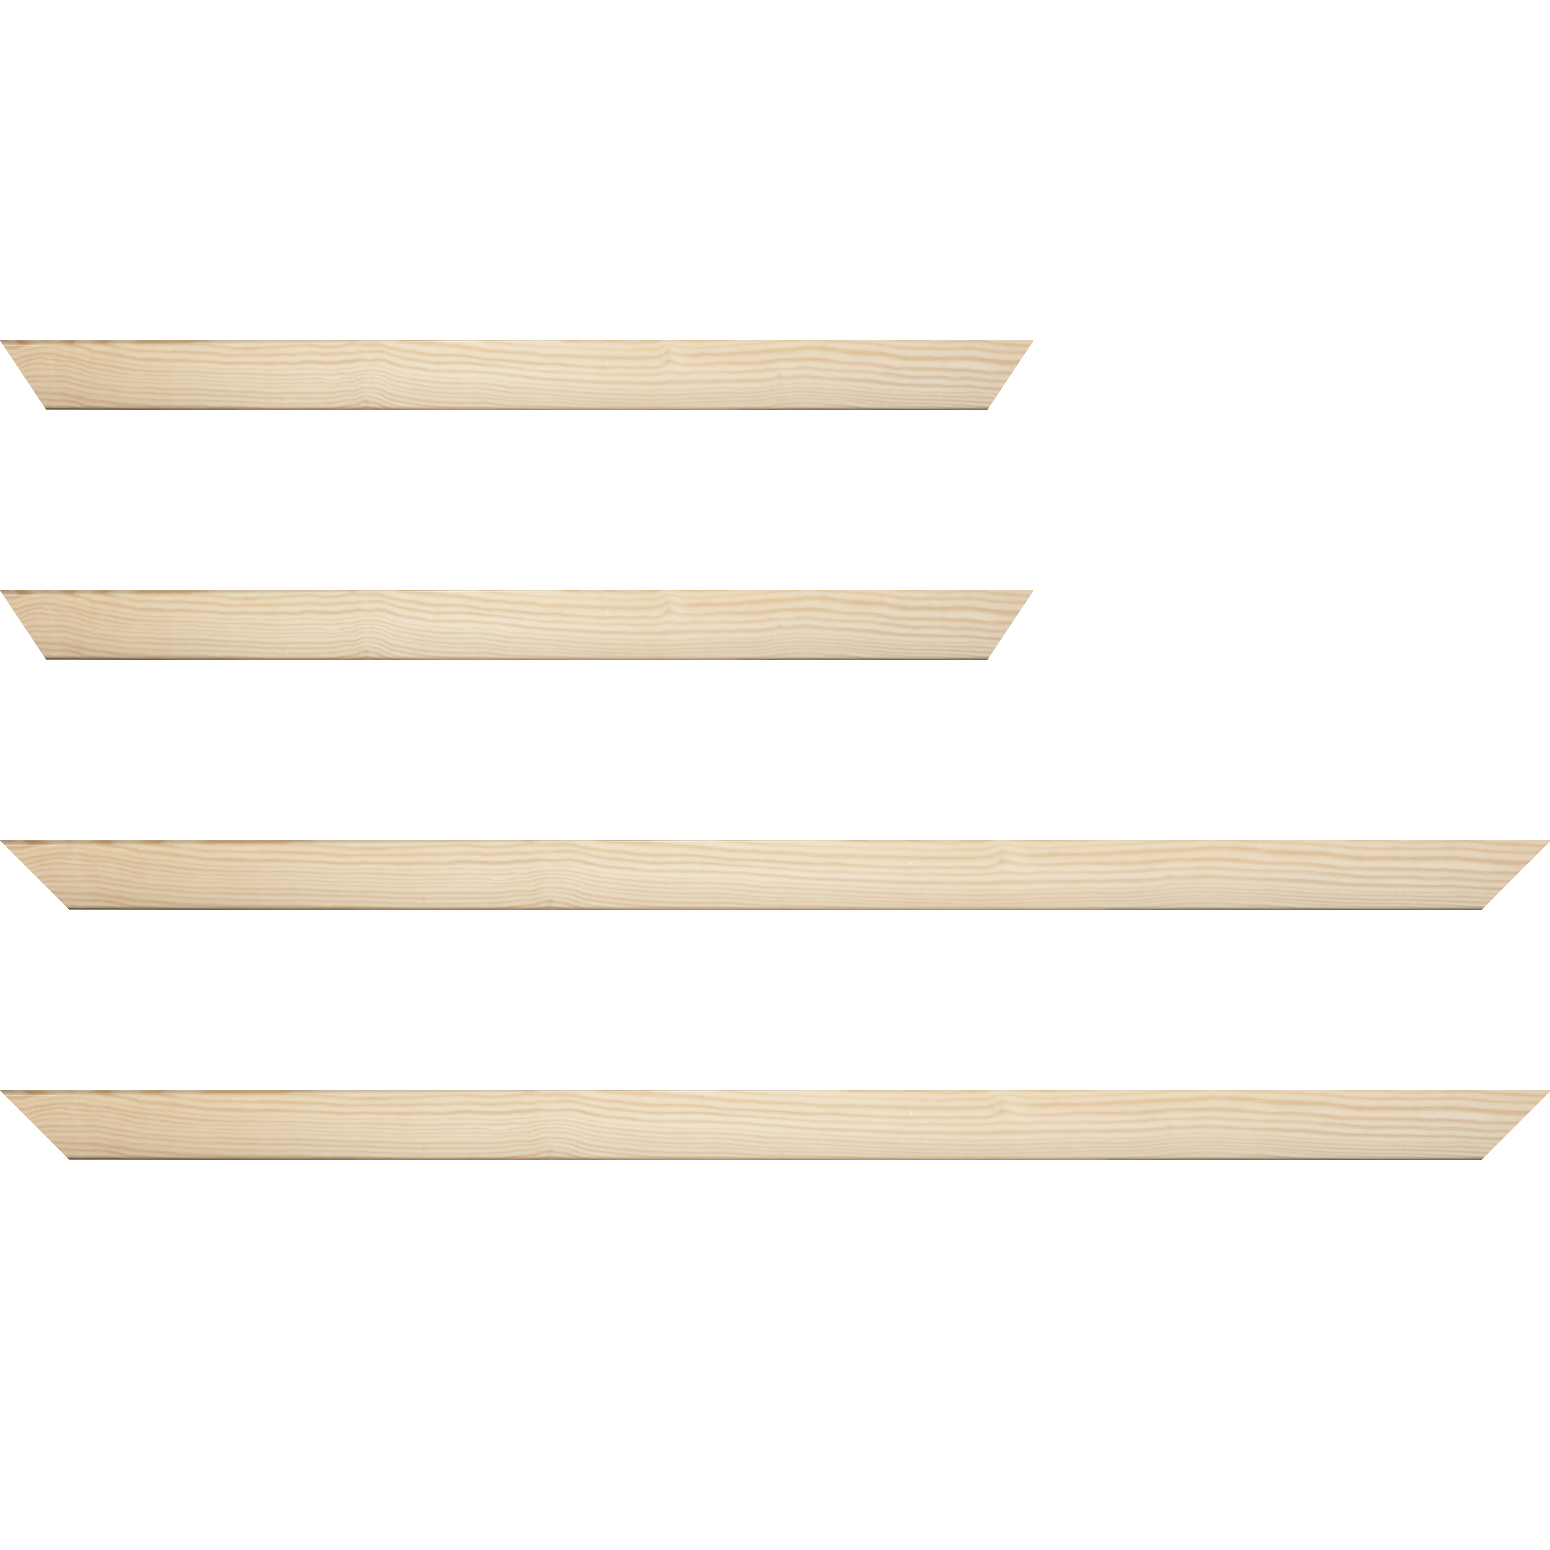 Baguette bois profil arrondi en pente plongeant largeur 2.4cm couleur naturel finition vernis brillant,veine du bois  apparent (pin) , - 59.4x84.1